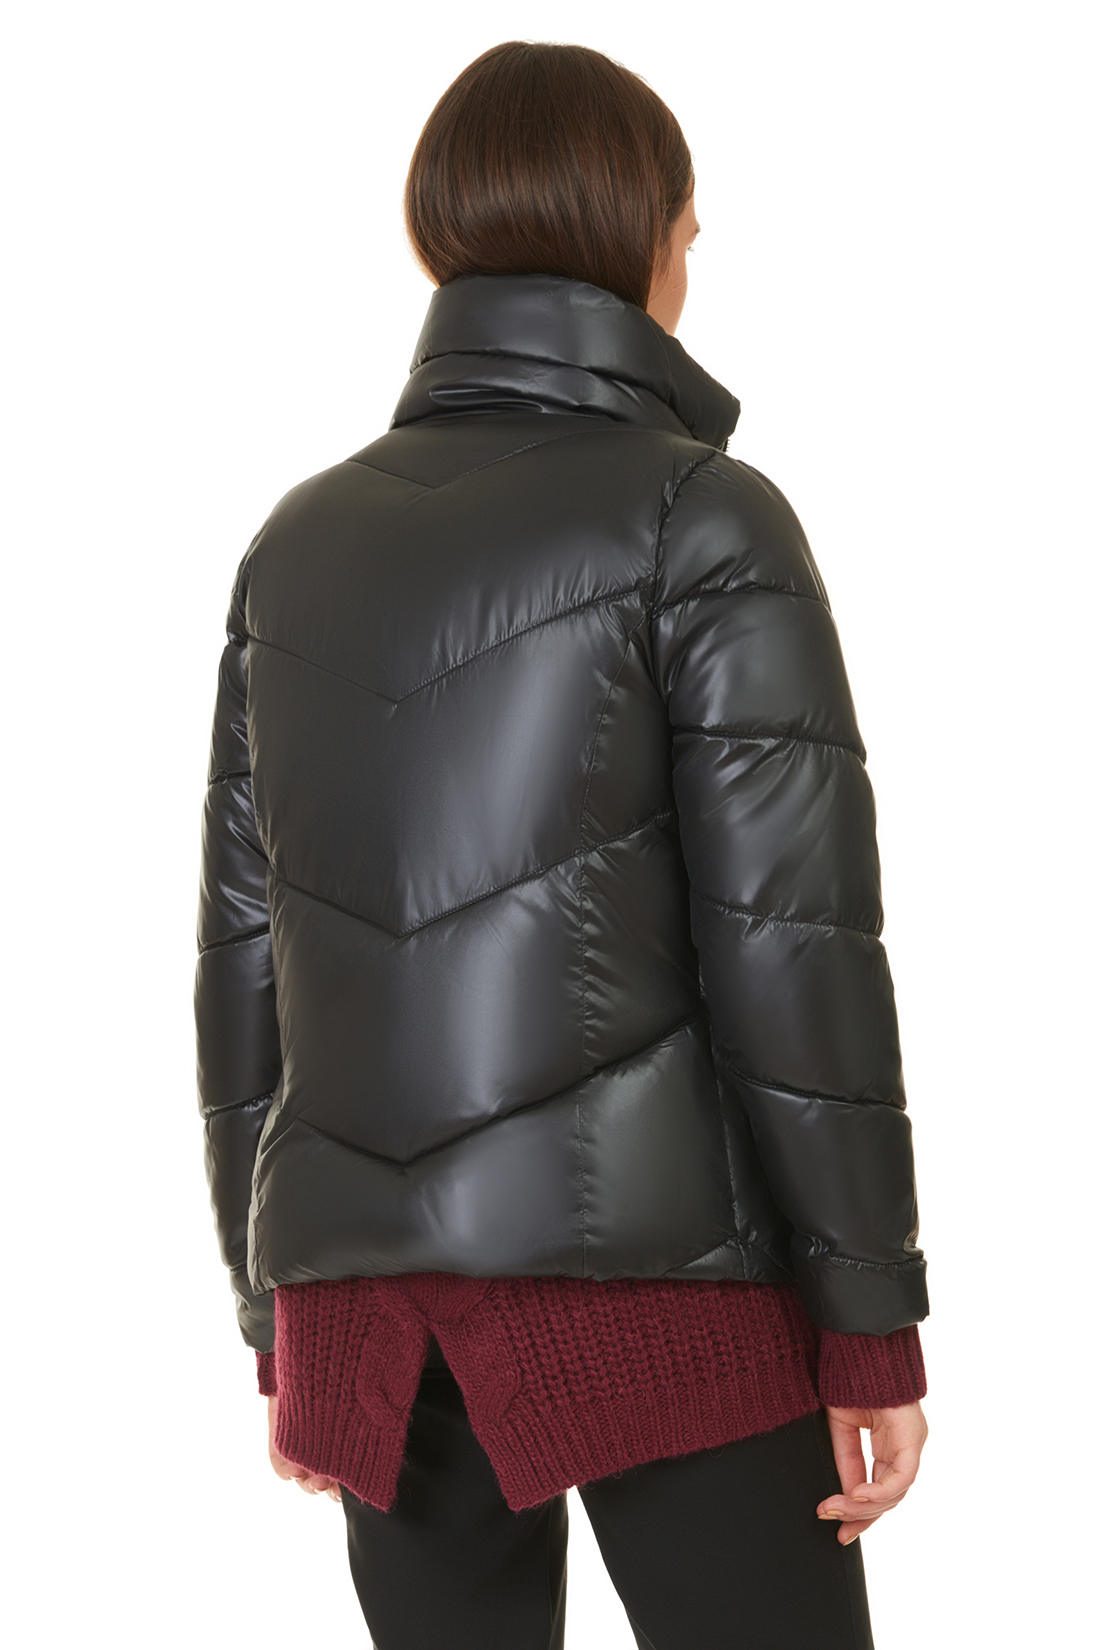 Укороченная дутая куртка (арт. baon B037565), размер S, цвет черный Укороченная дутая куртка (арт. baon B037565) - фото 2